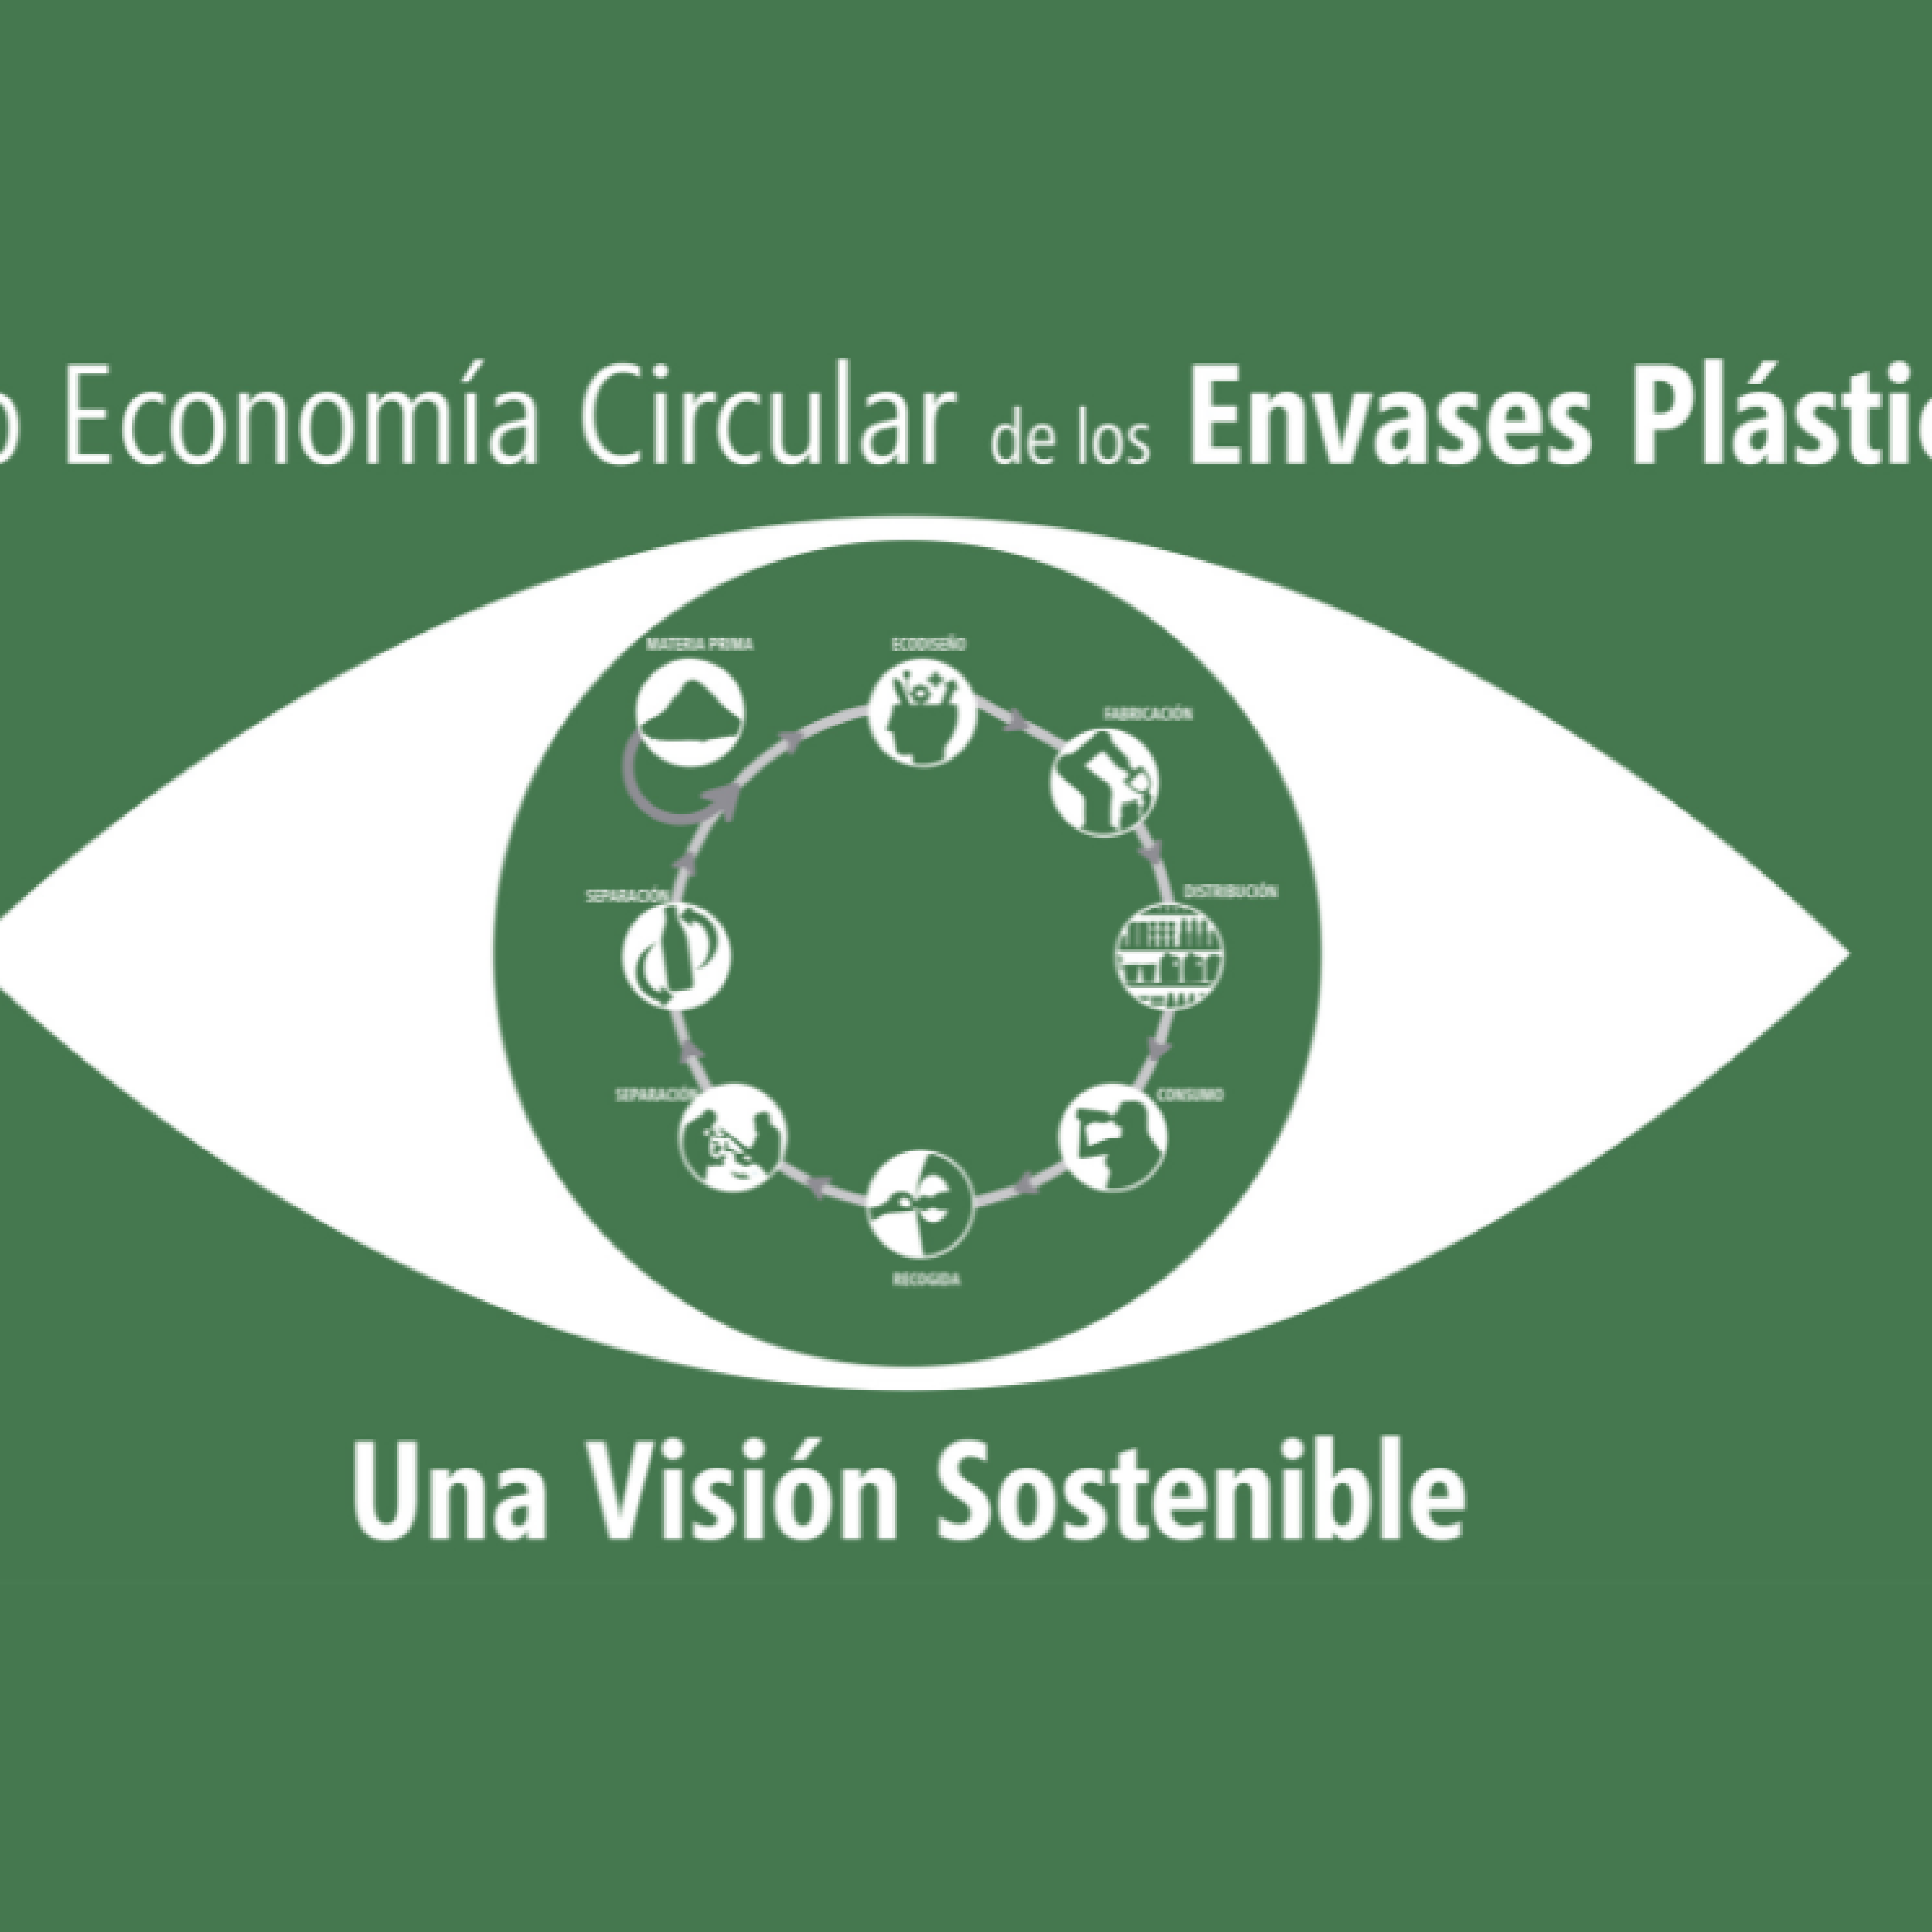 2ª Edición del Curso “Economía Circular de los Envases Plásticos”